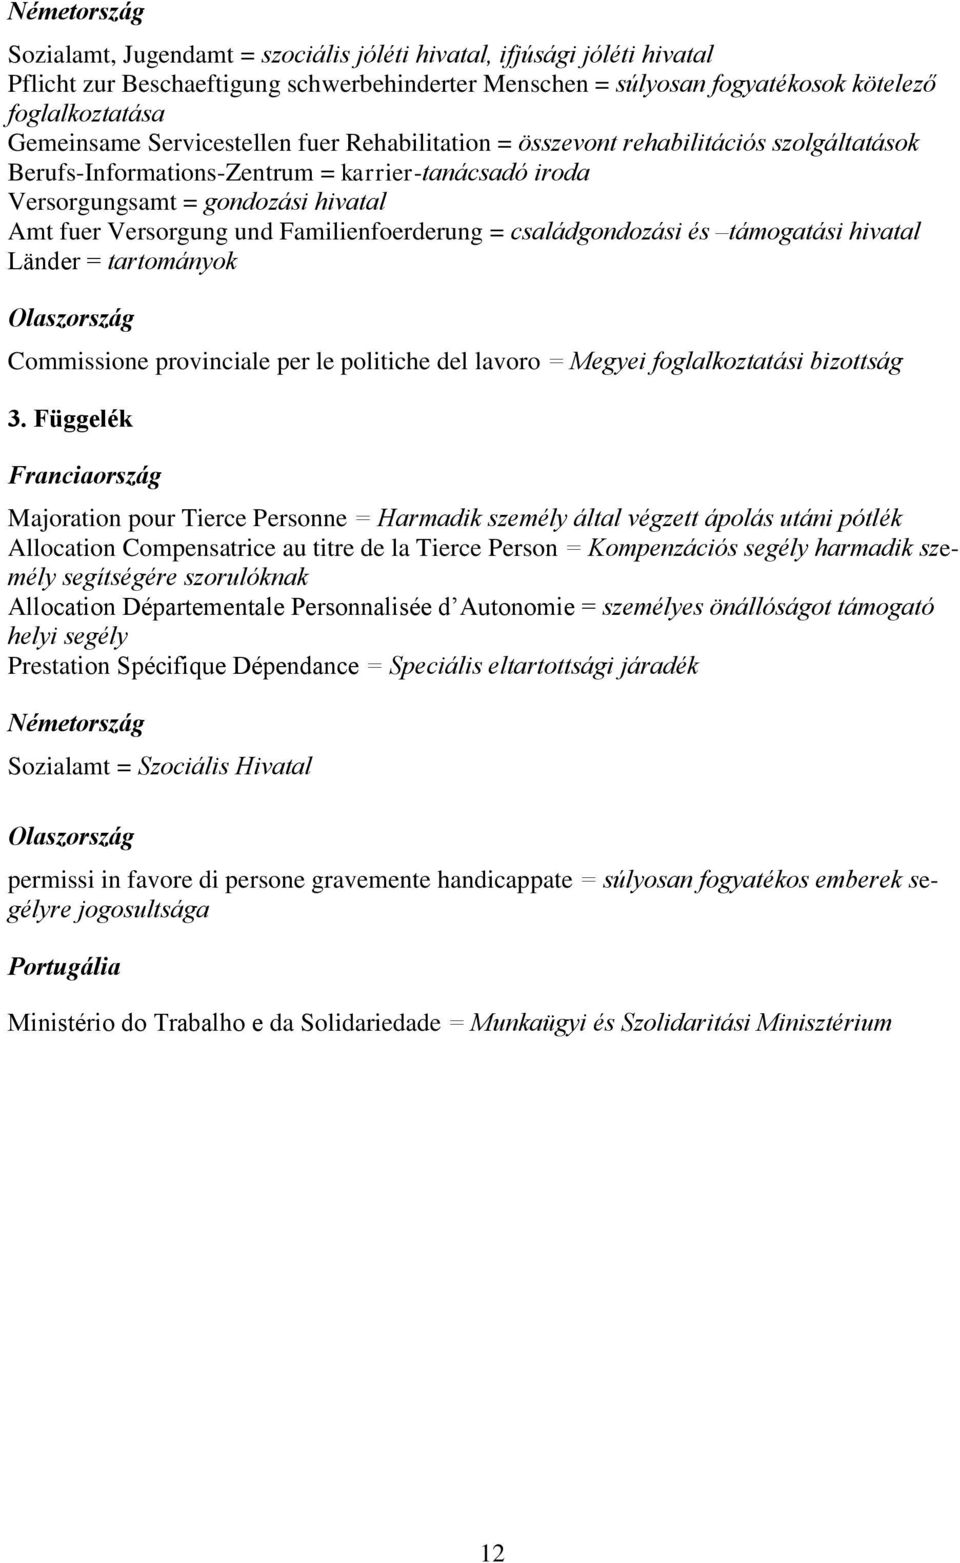 Familienfoerderung = családgondozási és támogatási hivatal Länder = tartományok Olaszország Commissione provinciale per le politiche del lavoro = Megyei foglalkoztatási bizottság 3.